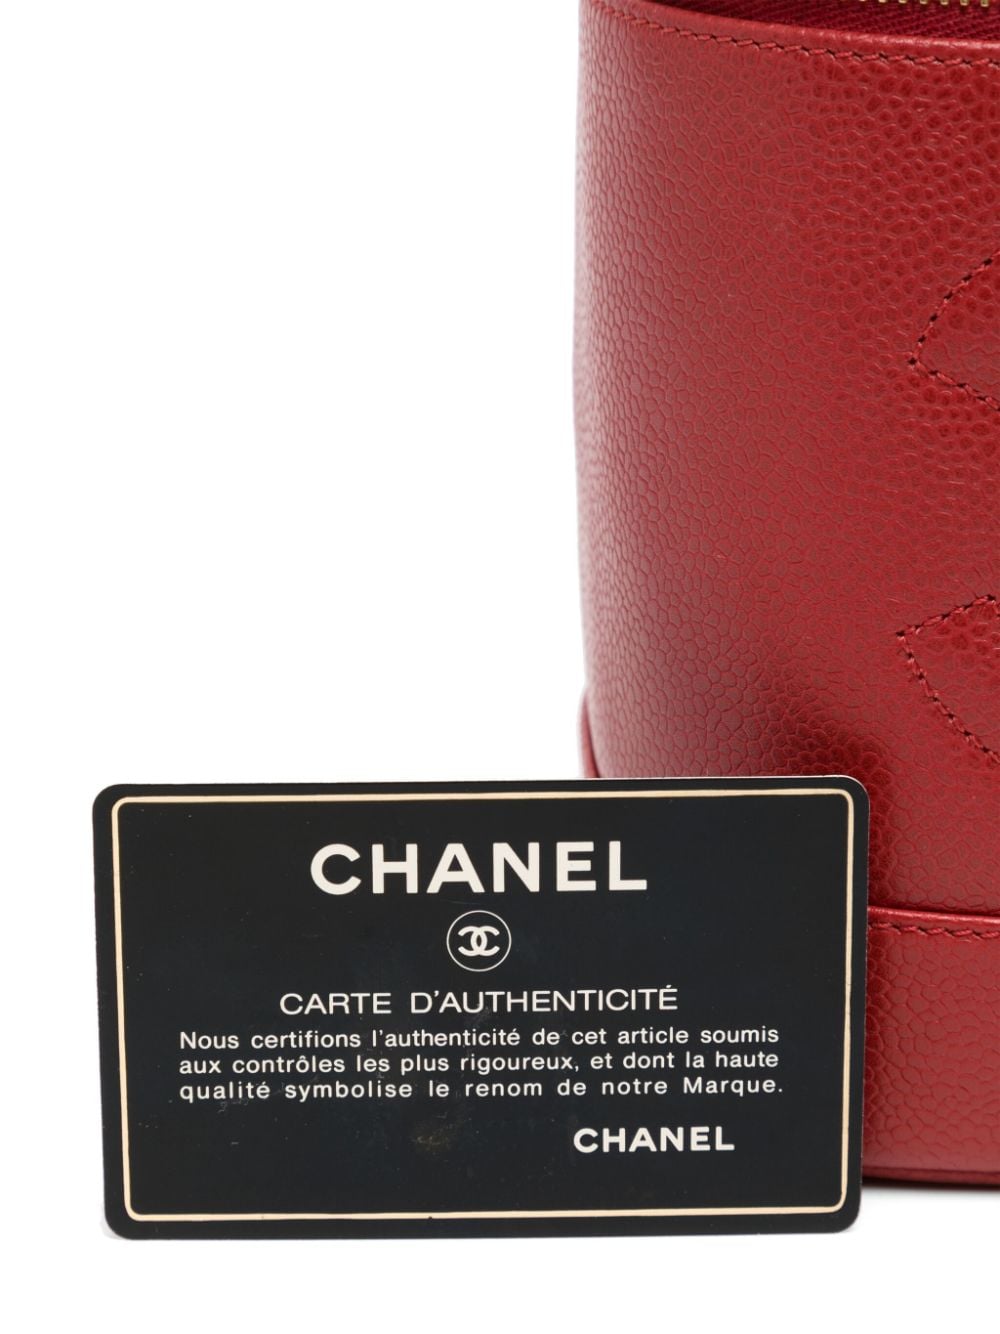 CHANEL Pre-Owned 1997 CC Stitch Vanity Handbag - Farfetch